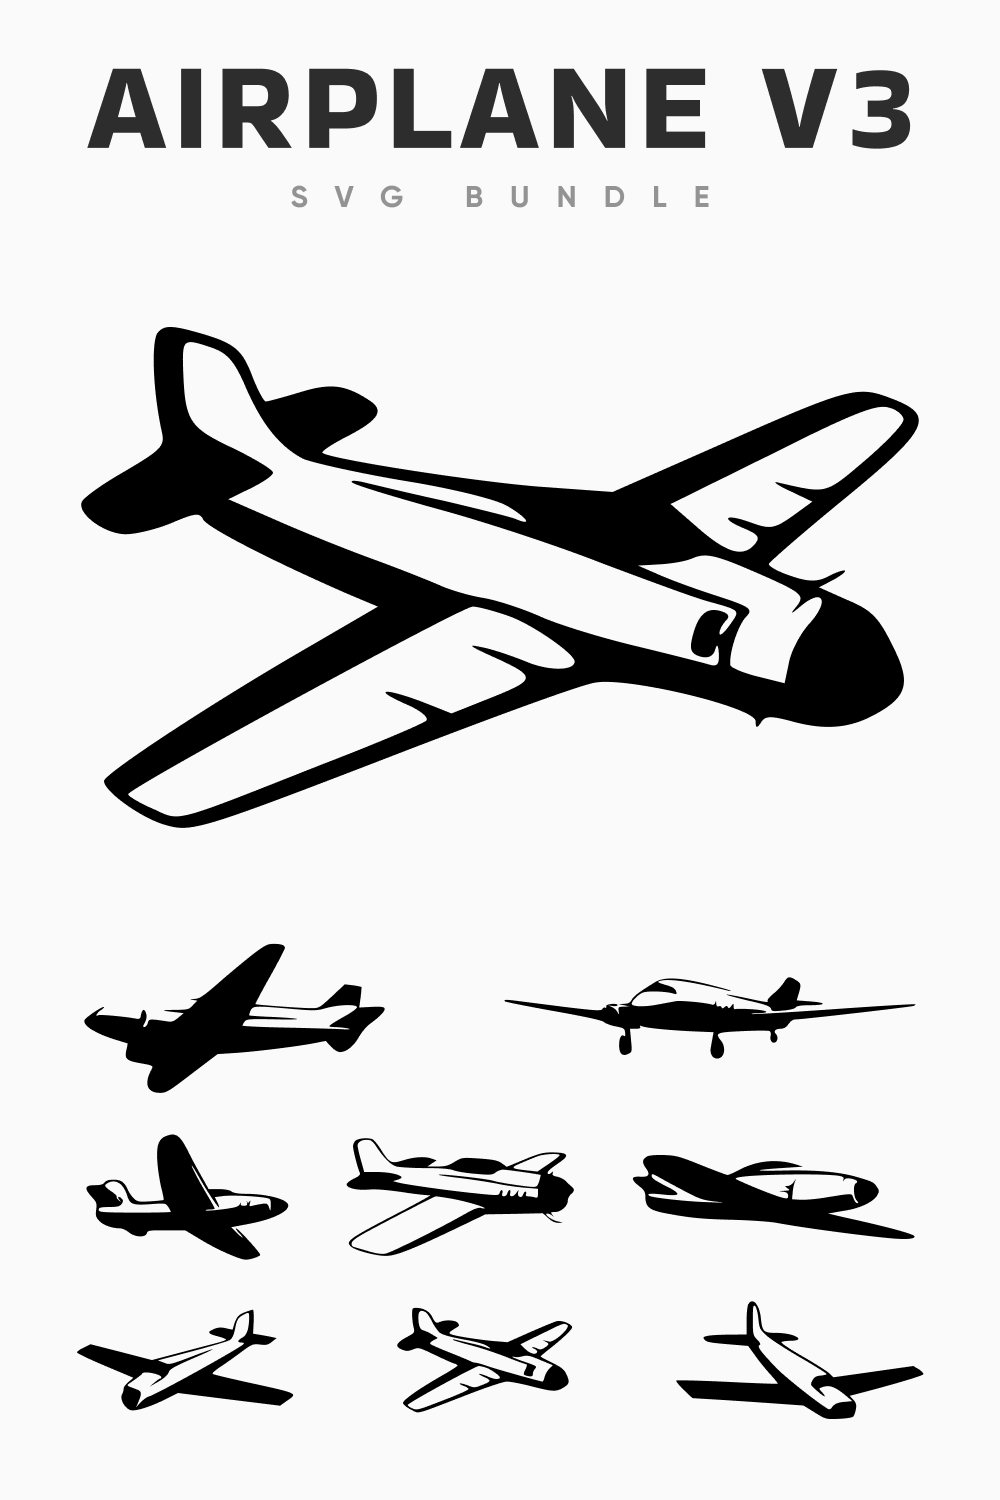 Airplane V3 SVG Bundle.